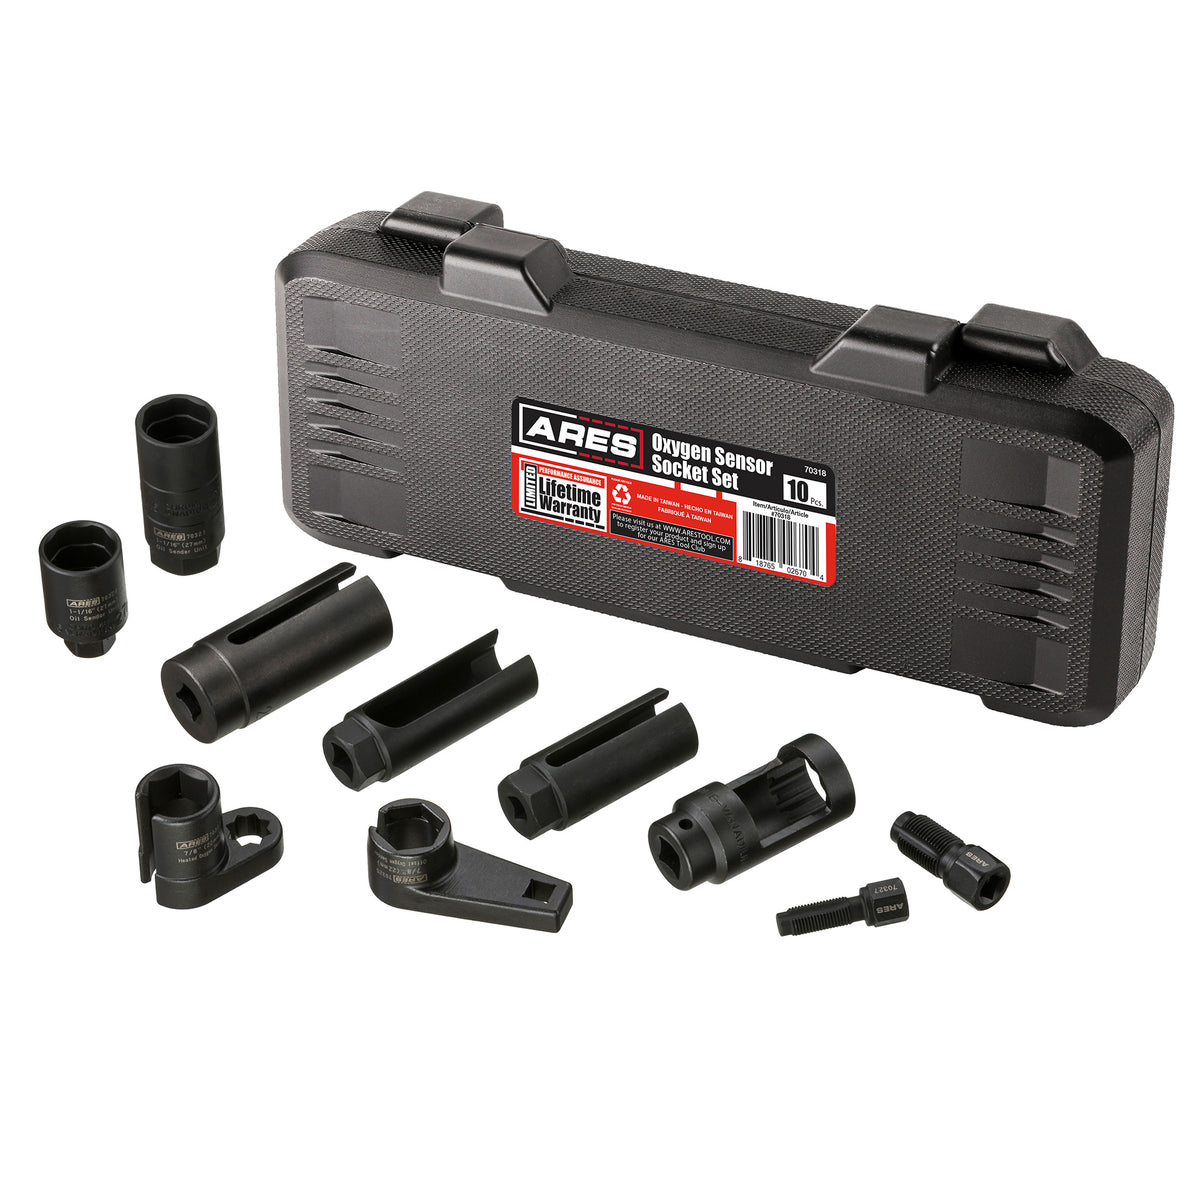 10-Piece Oxygen Sensor Socket Set — ARES Tool, MJD Industries, LLC